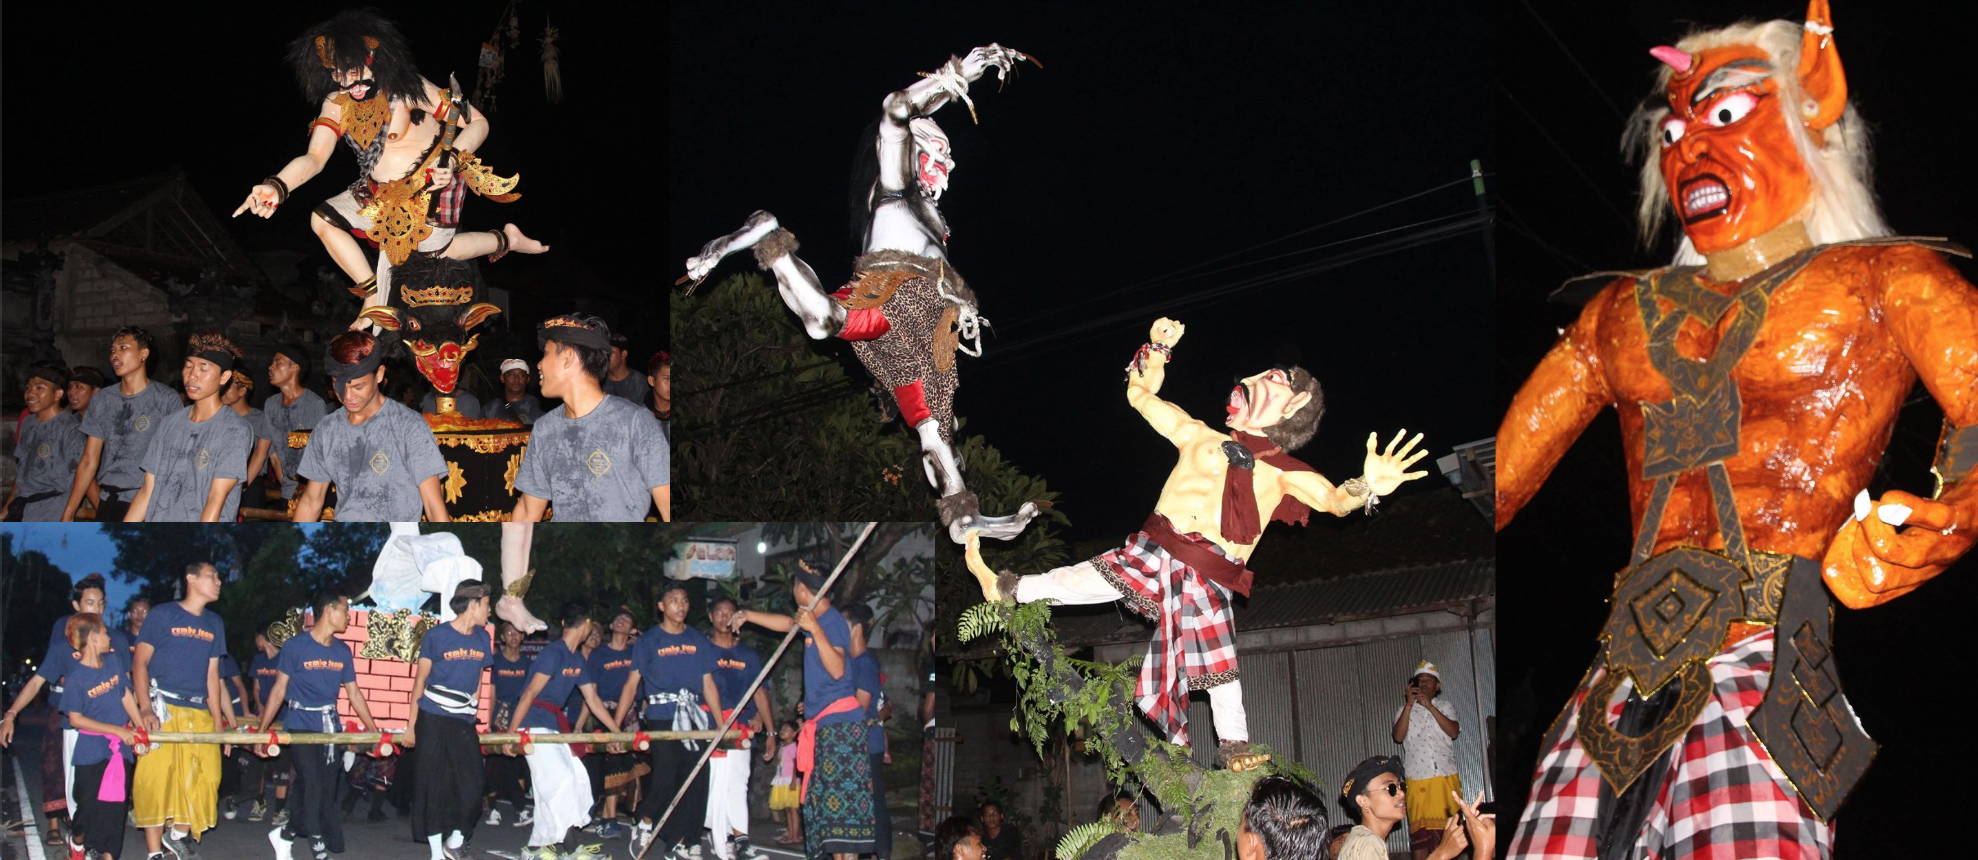 Images of Ogoh Ogoh festival in Bali